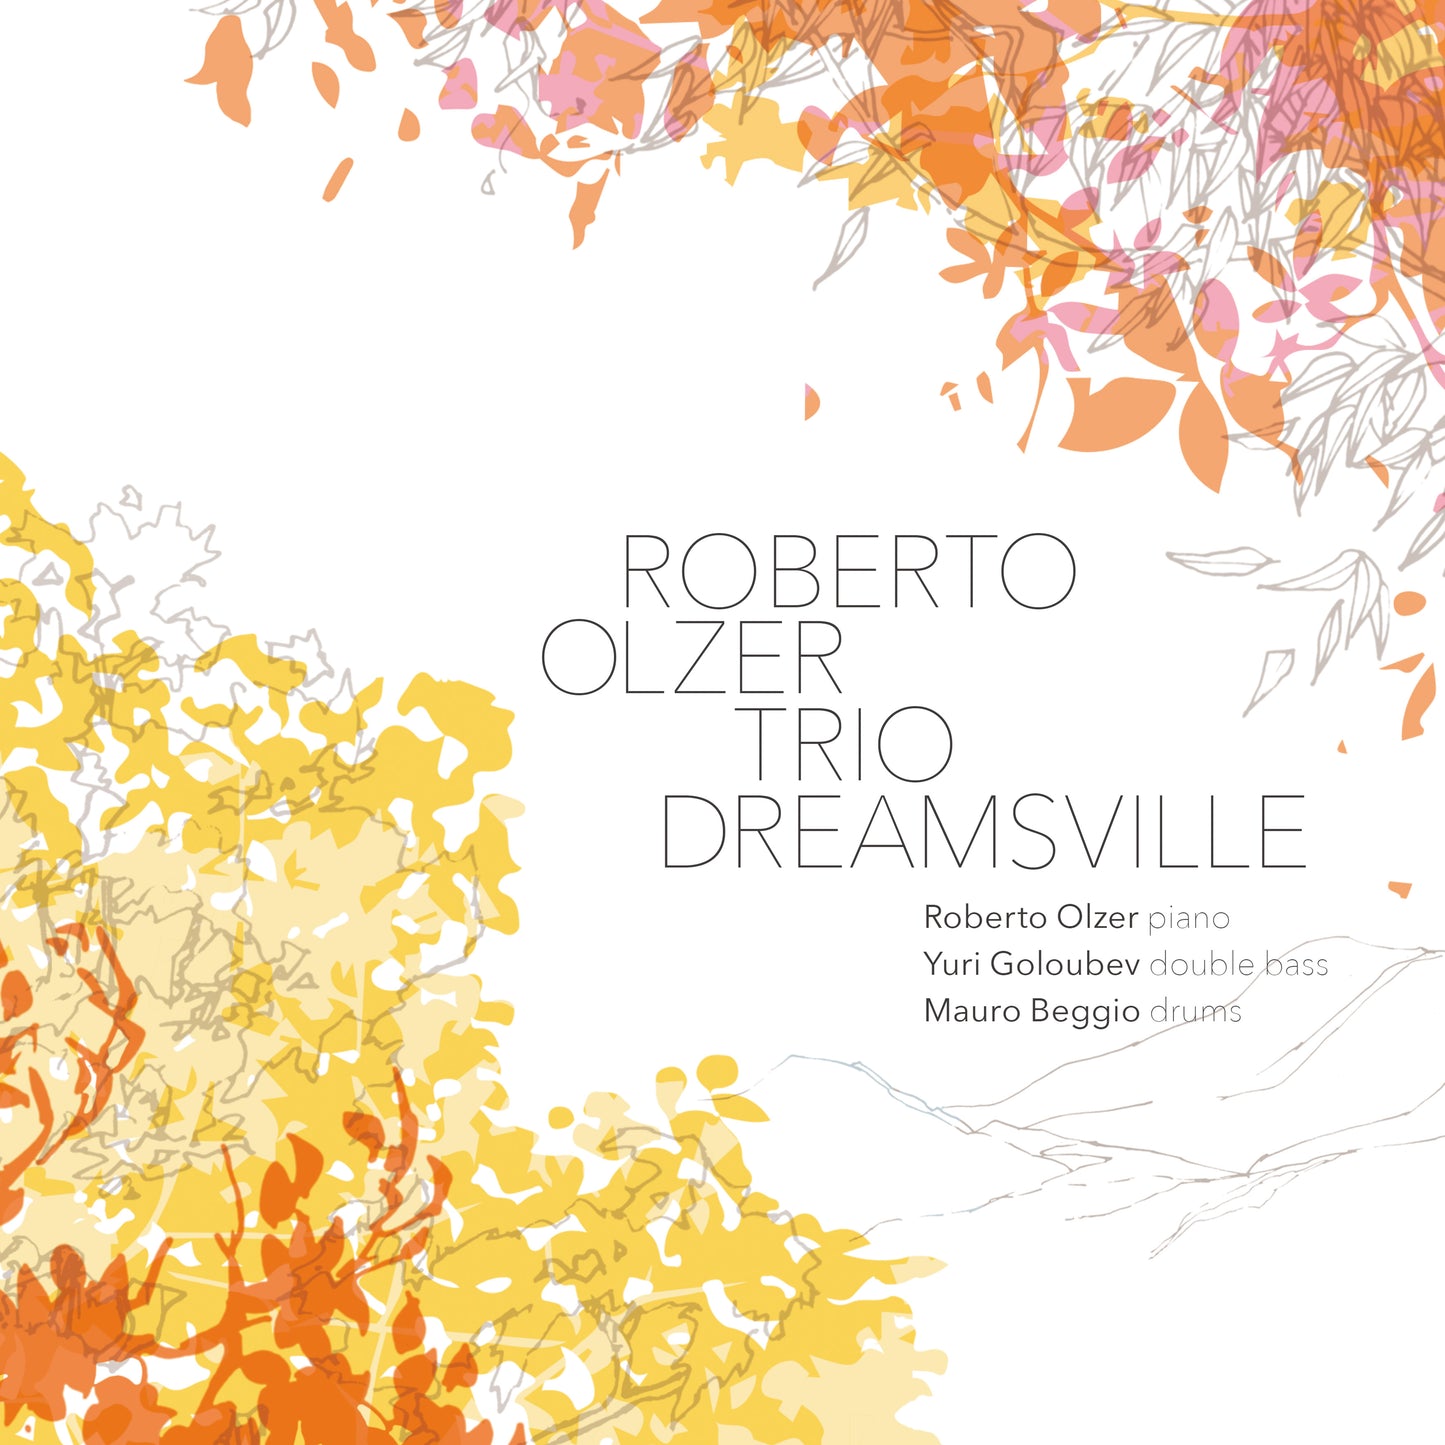 DREAMSVILLE (LP) - ROBERTO OLZER TRIO